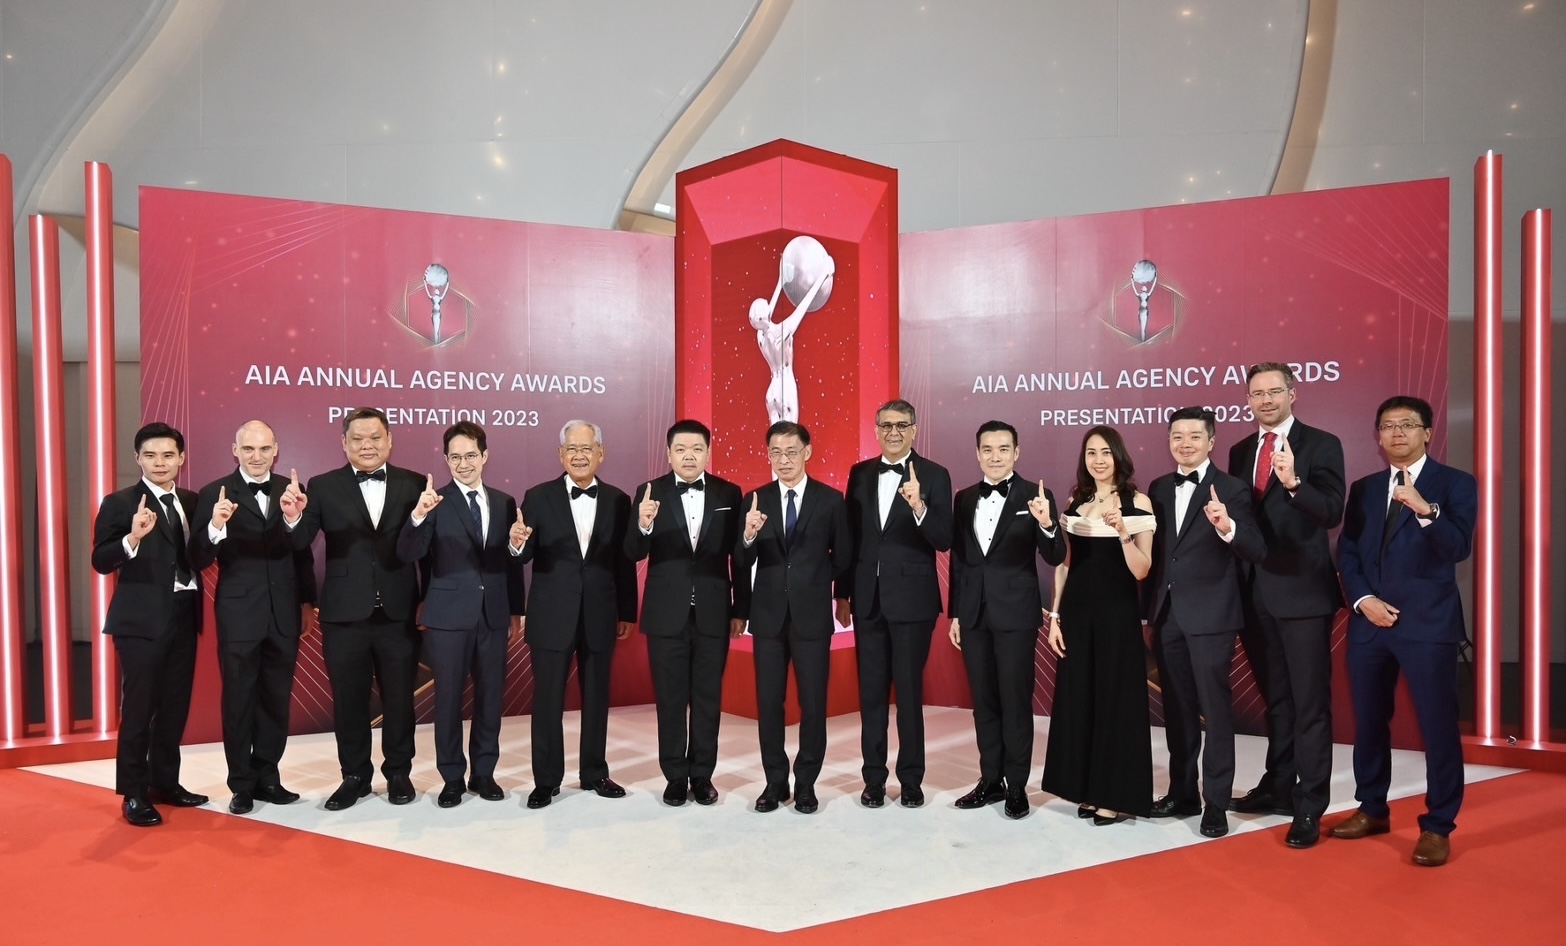 เอไอเอ ประเทศไทย มอบรางวัลเกียรติยศแก่สุดยอดตัวแทน “ที่สุดแห่งปี” ประจำปี 2566ในงาน AIA Annual Agency Awards Presentation 2023